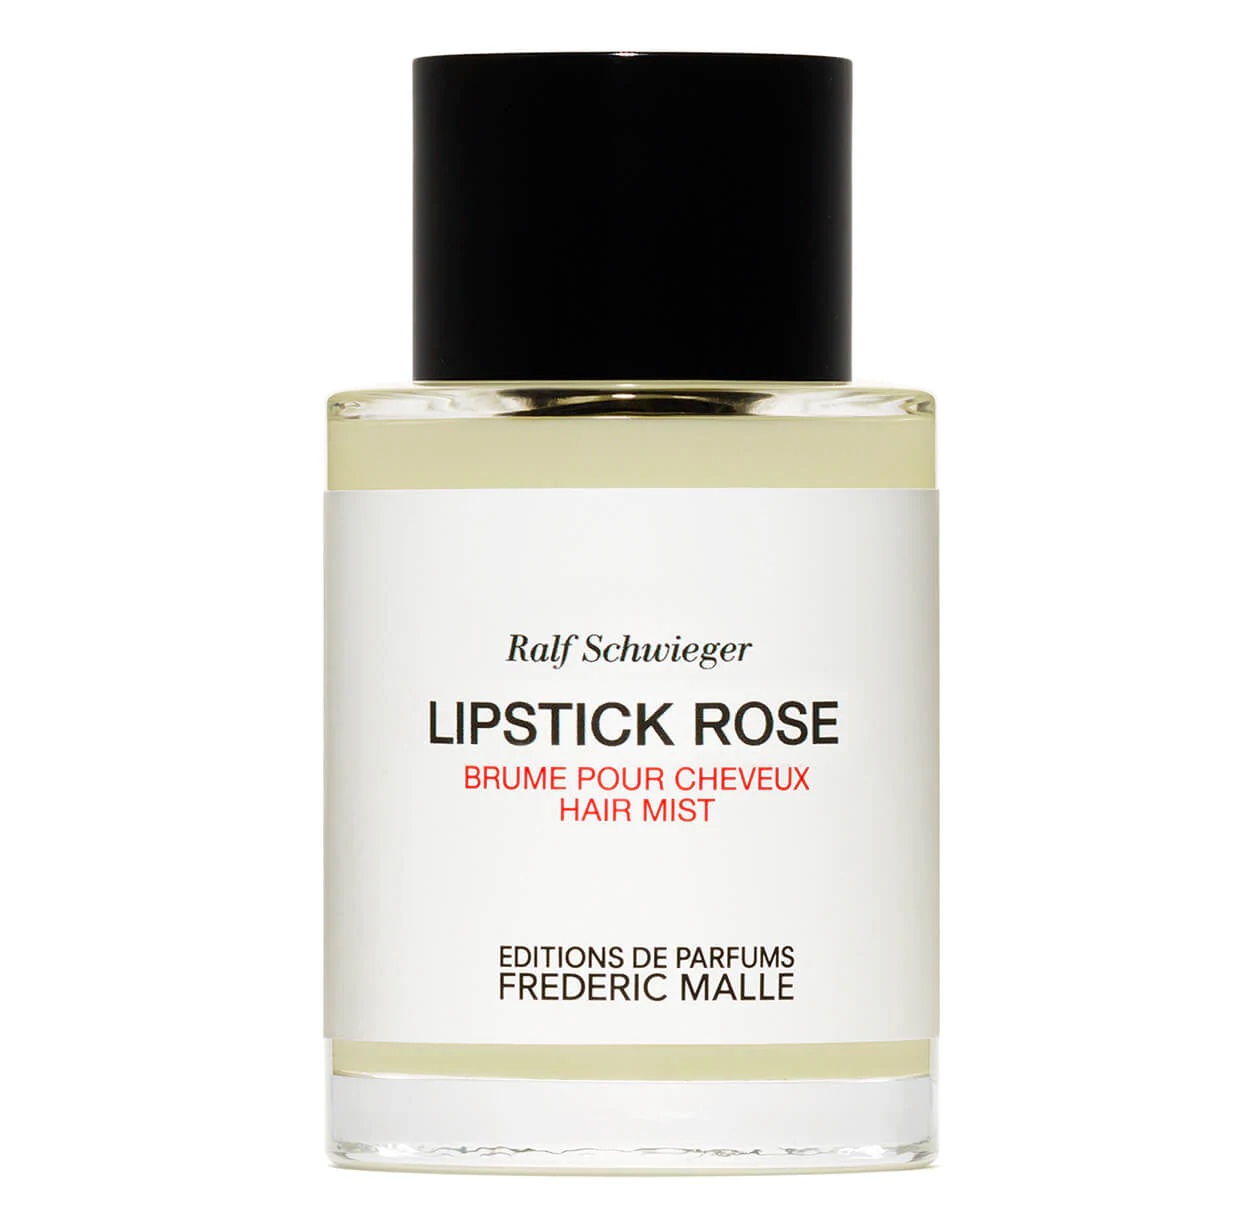 Lipstick Rose (Brume pour Cheveux / Hair mist)